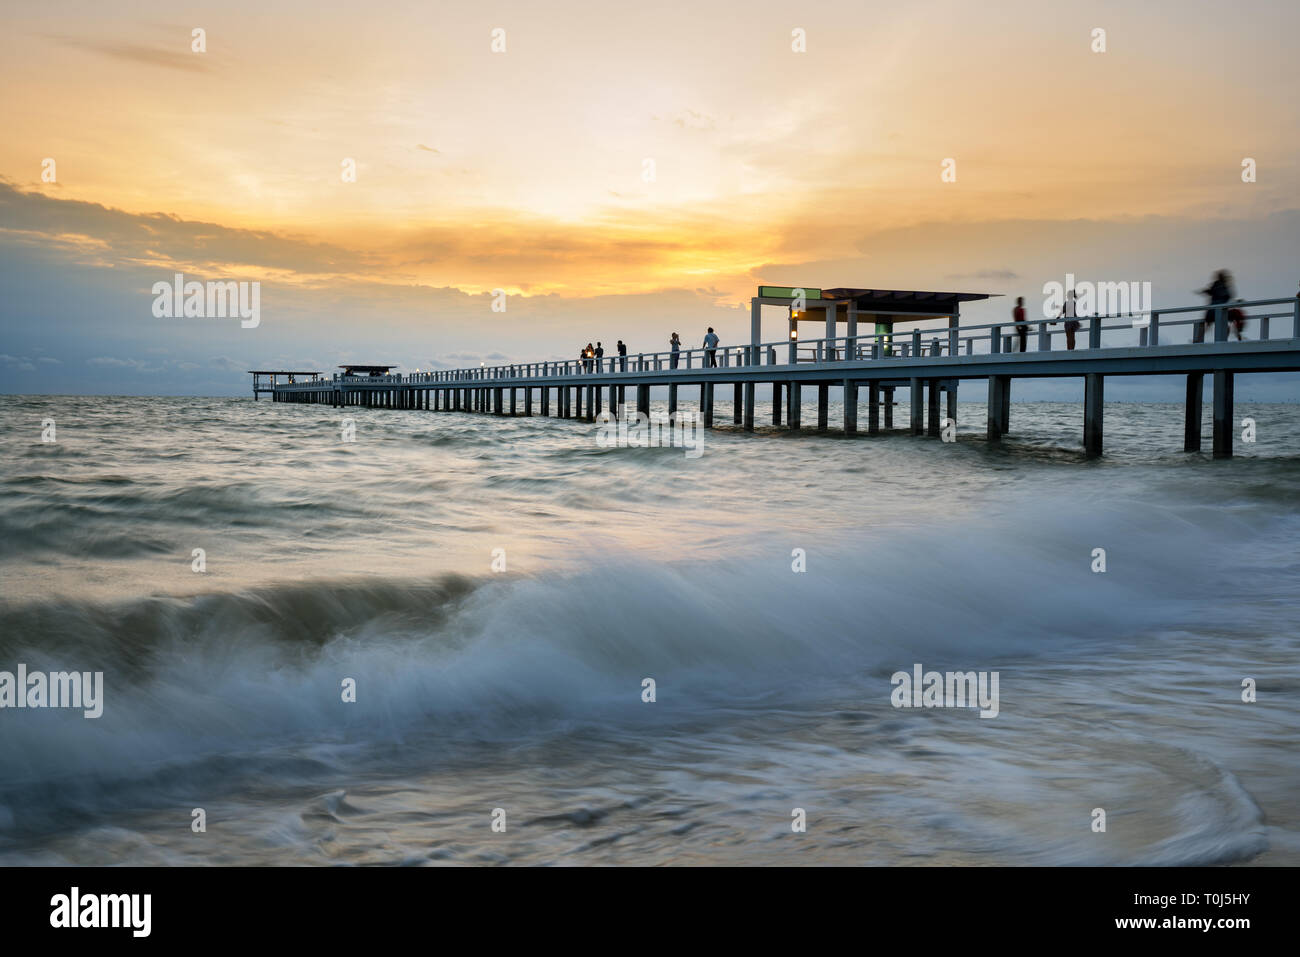 Hölzerne Pier zwischen Sonnenuntergang in Phuket, Thailand. Sommer, Reisen, Urlaub und Ferien-Konzept. Stockfoto